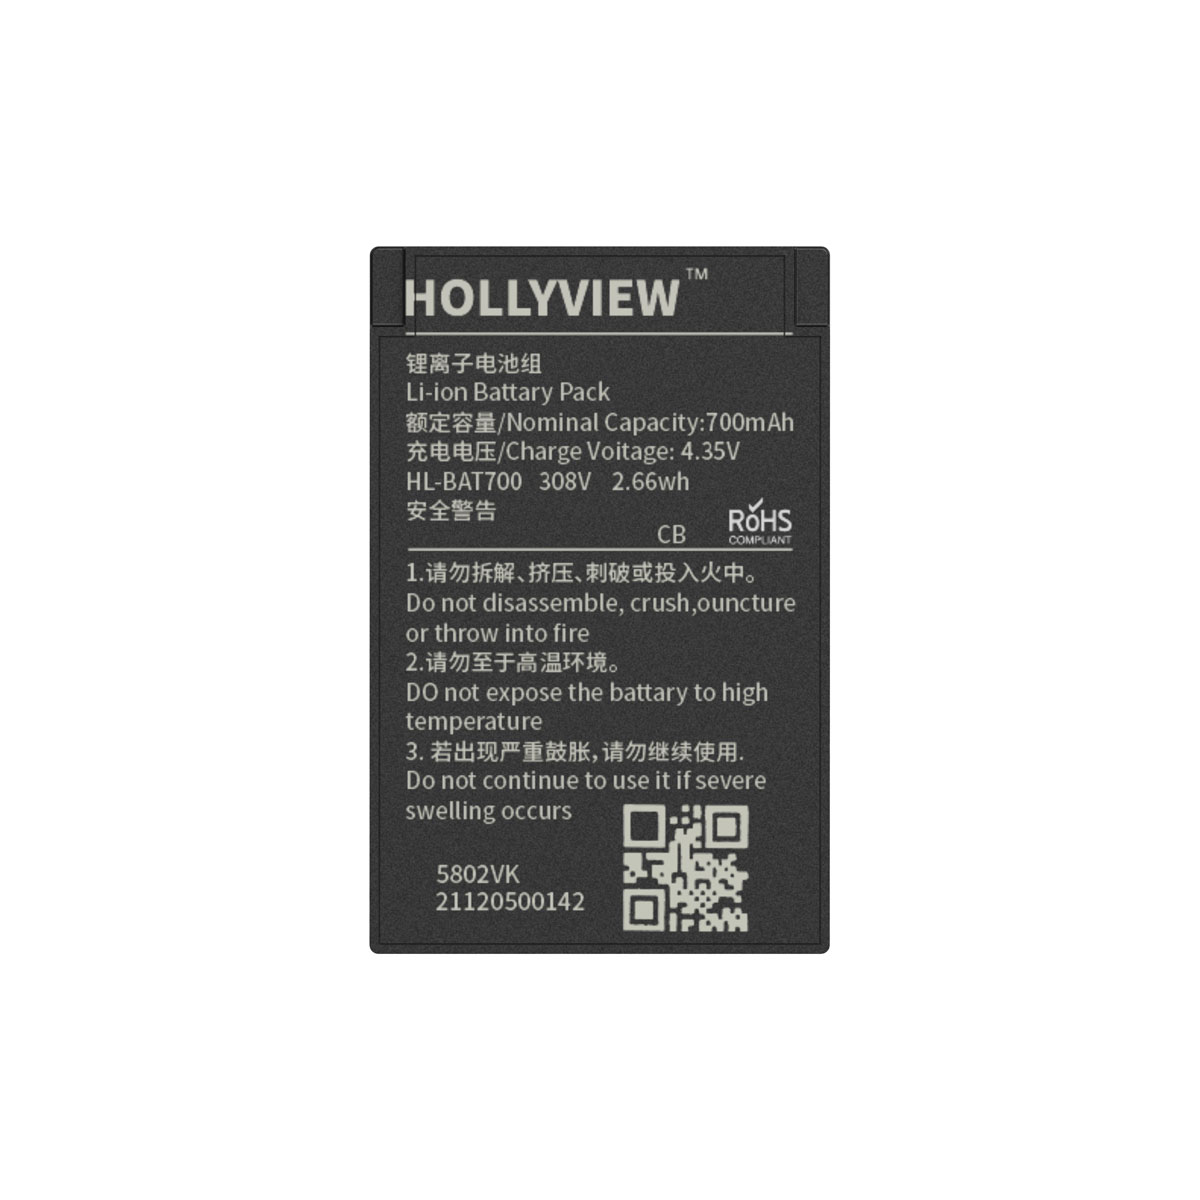 Hollyland Solidcom C1-6S (6人用ヘッドセットシステム) デジタルワイヤレスインカム パンダスタジオ・レンタル公式サイト